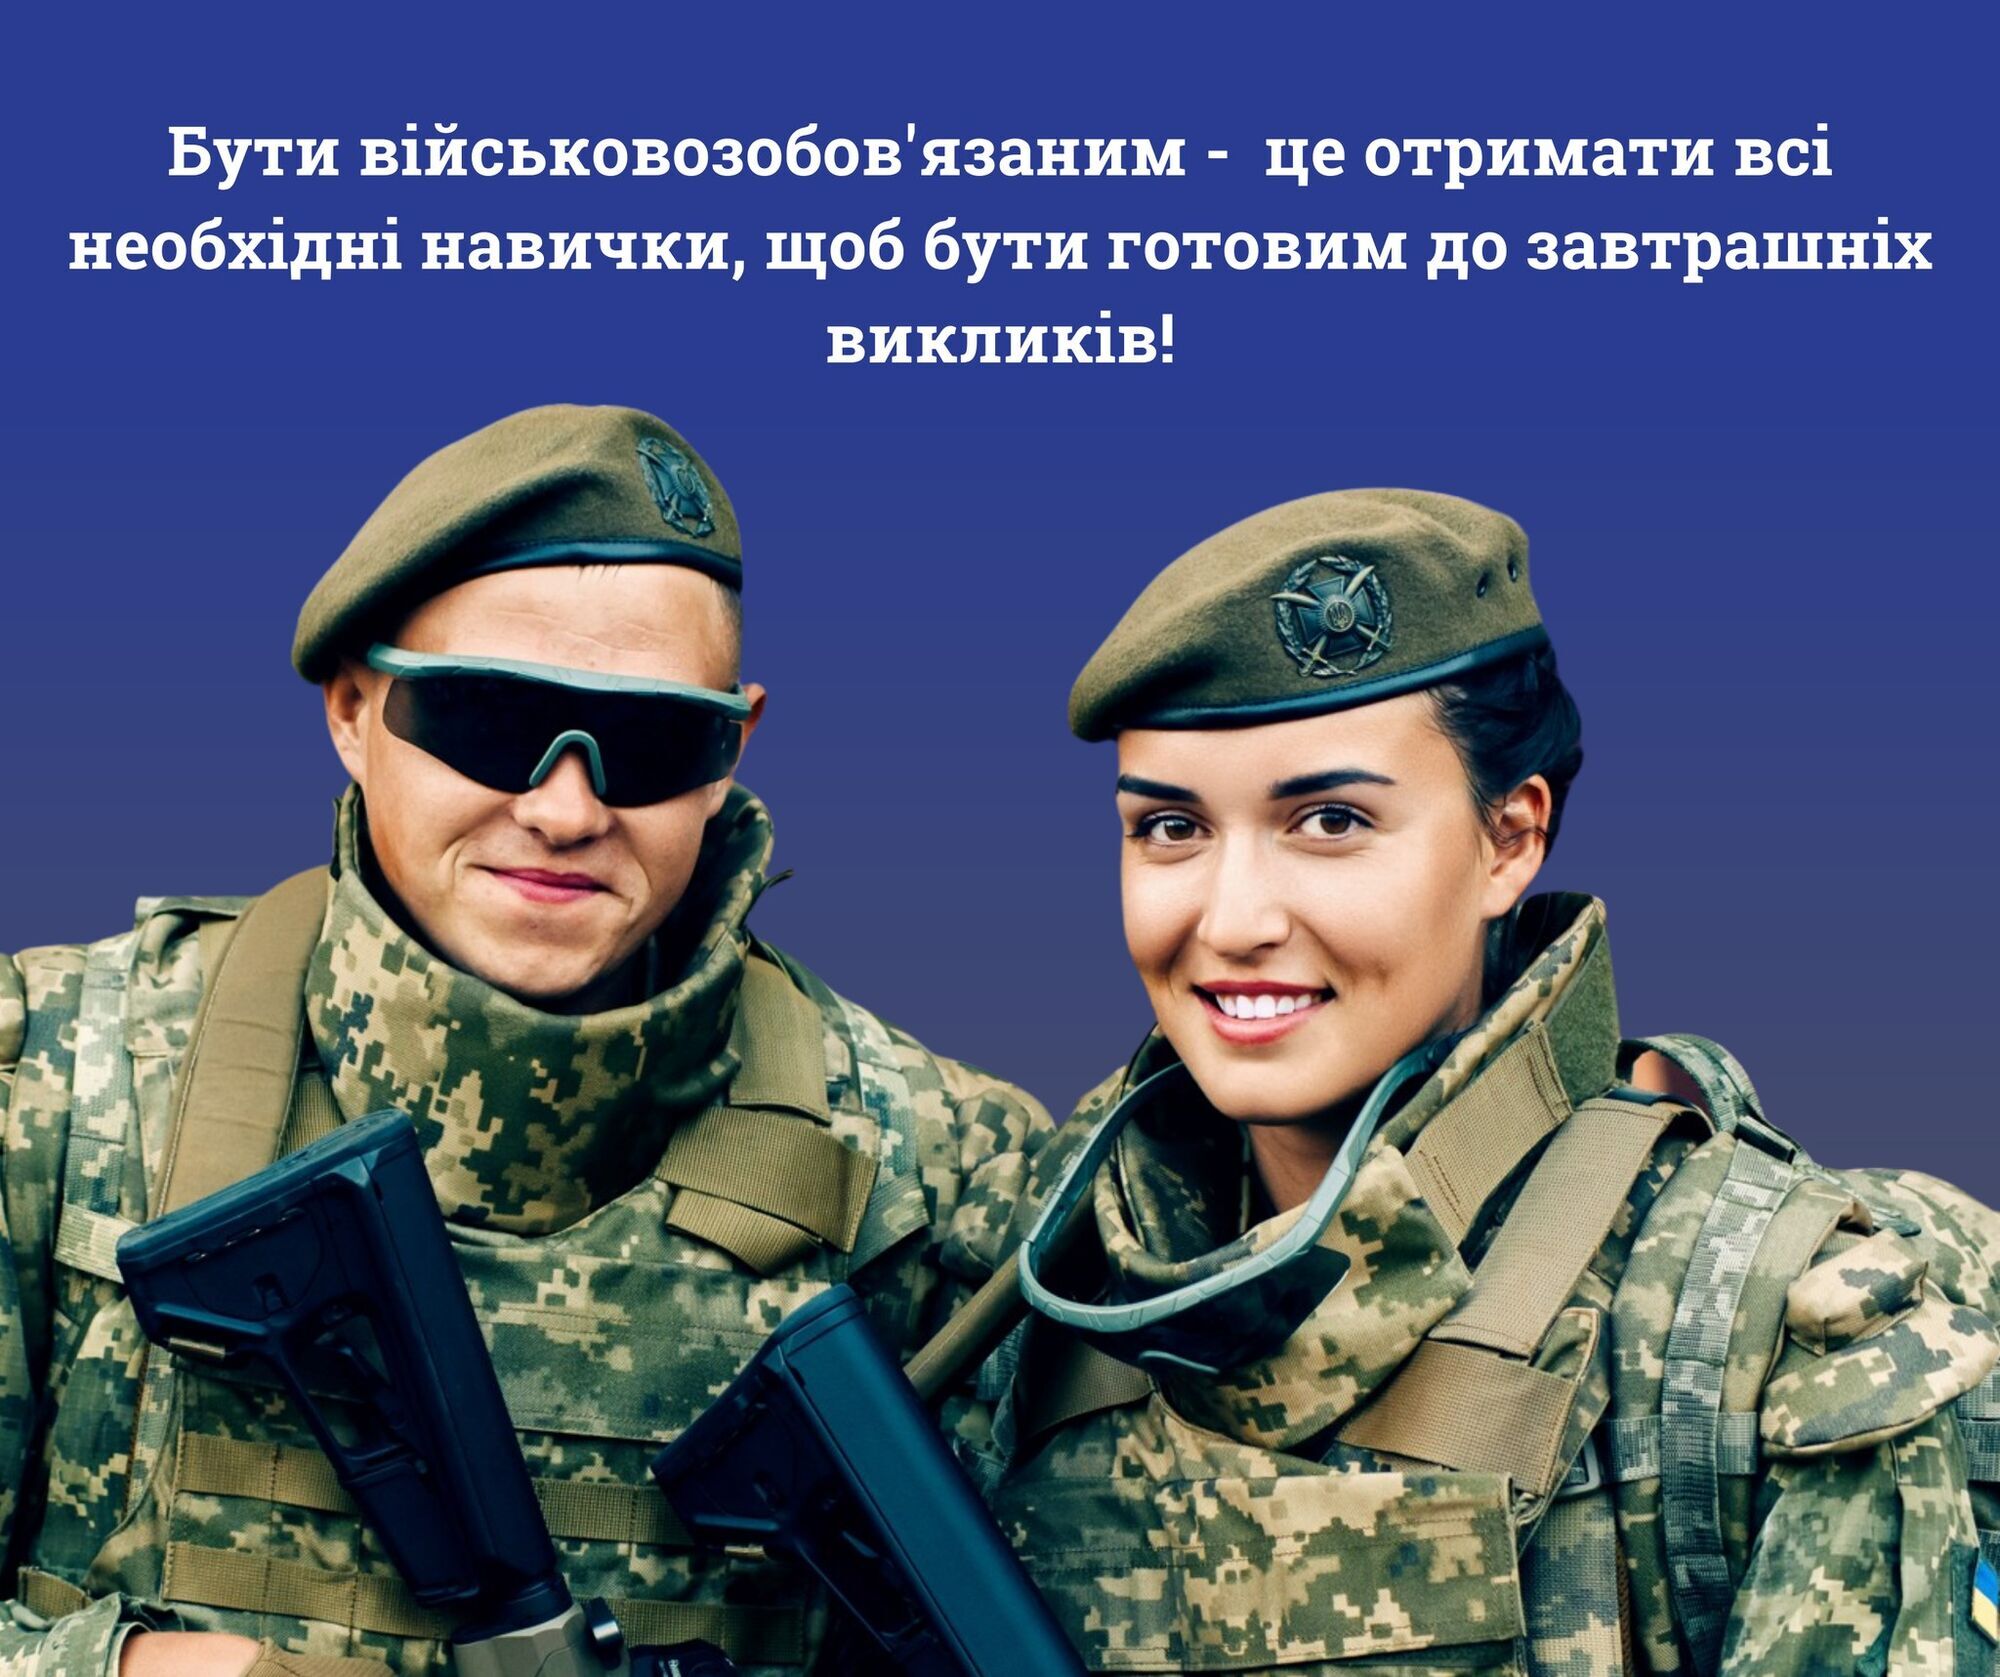 На Официальной странице Управления стратегических коммуникаций Аппарата Главнокомандующего Вооруженными силами Украины опубликовали разъяснения.